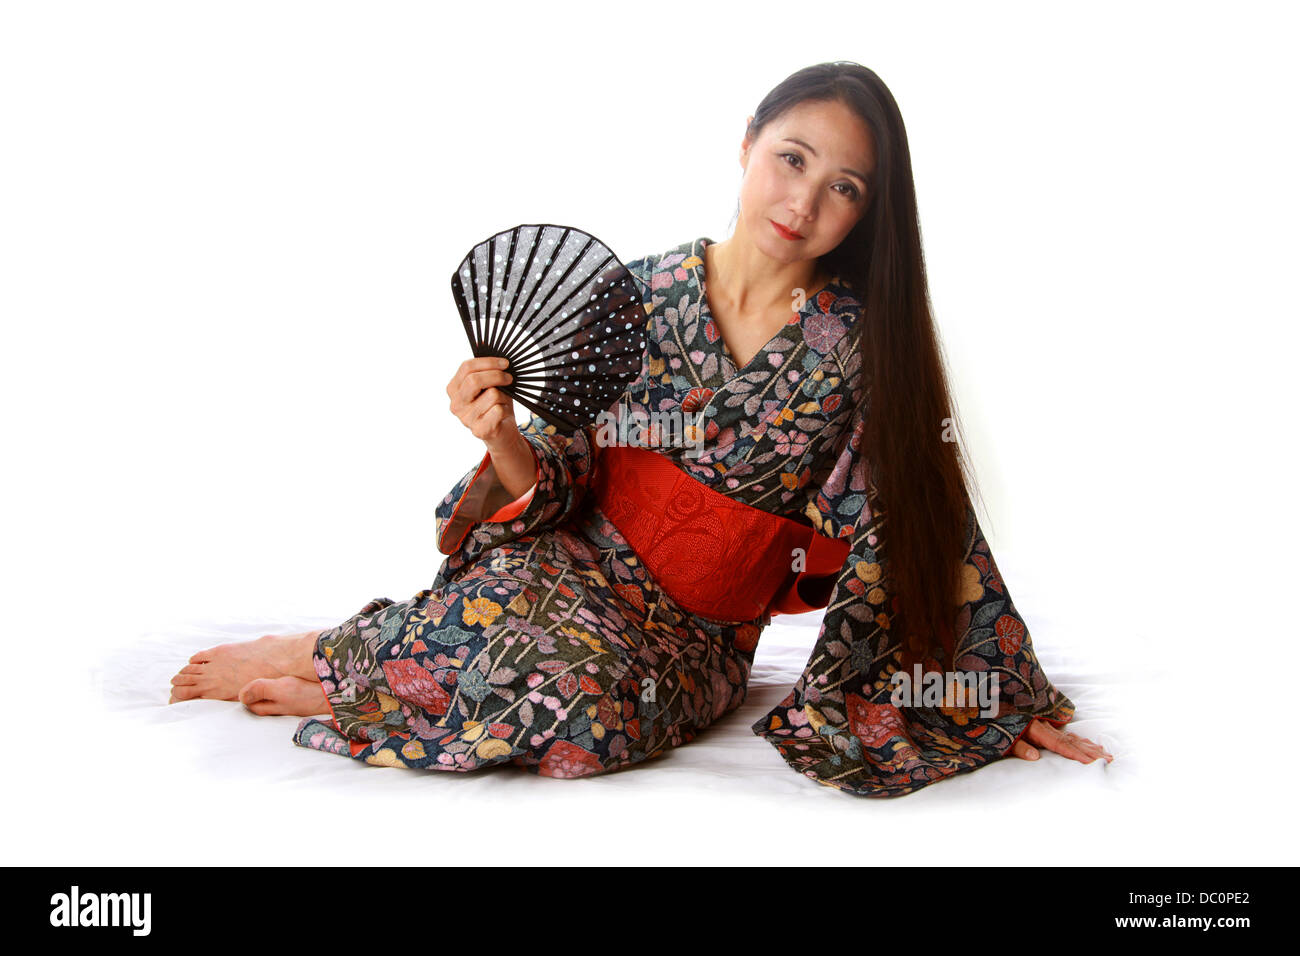 Dama japonesa sentada en el suelo vistiendo un tradicional Kimono telas azules y rojas y la celebración de un ventilador Foto de stock